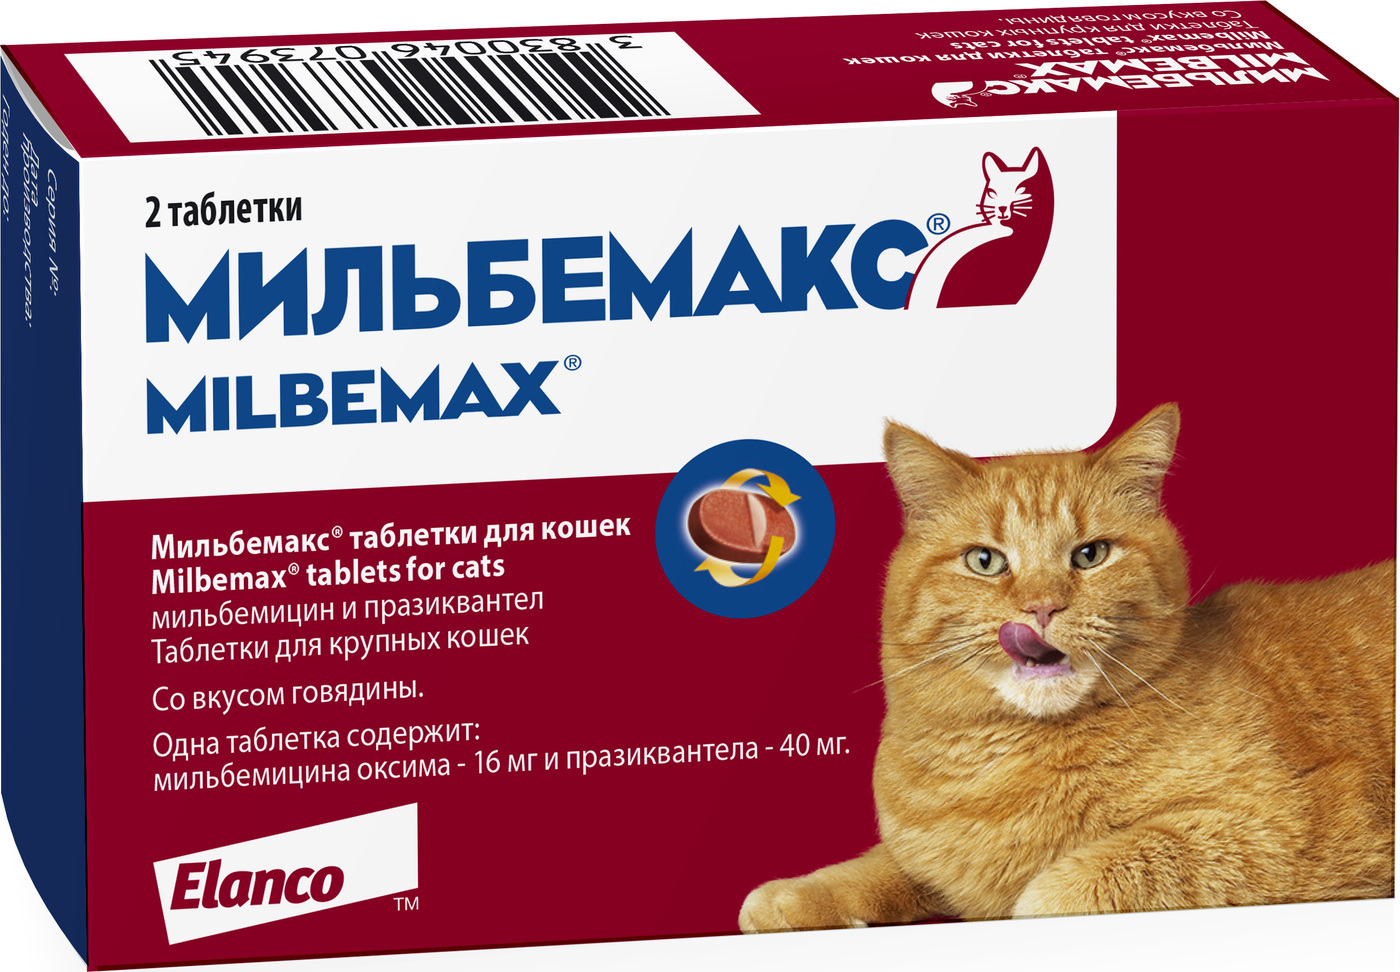 Глистогонное для кошек: антигельминтные препараты